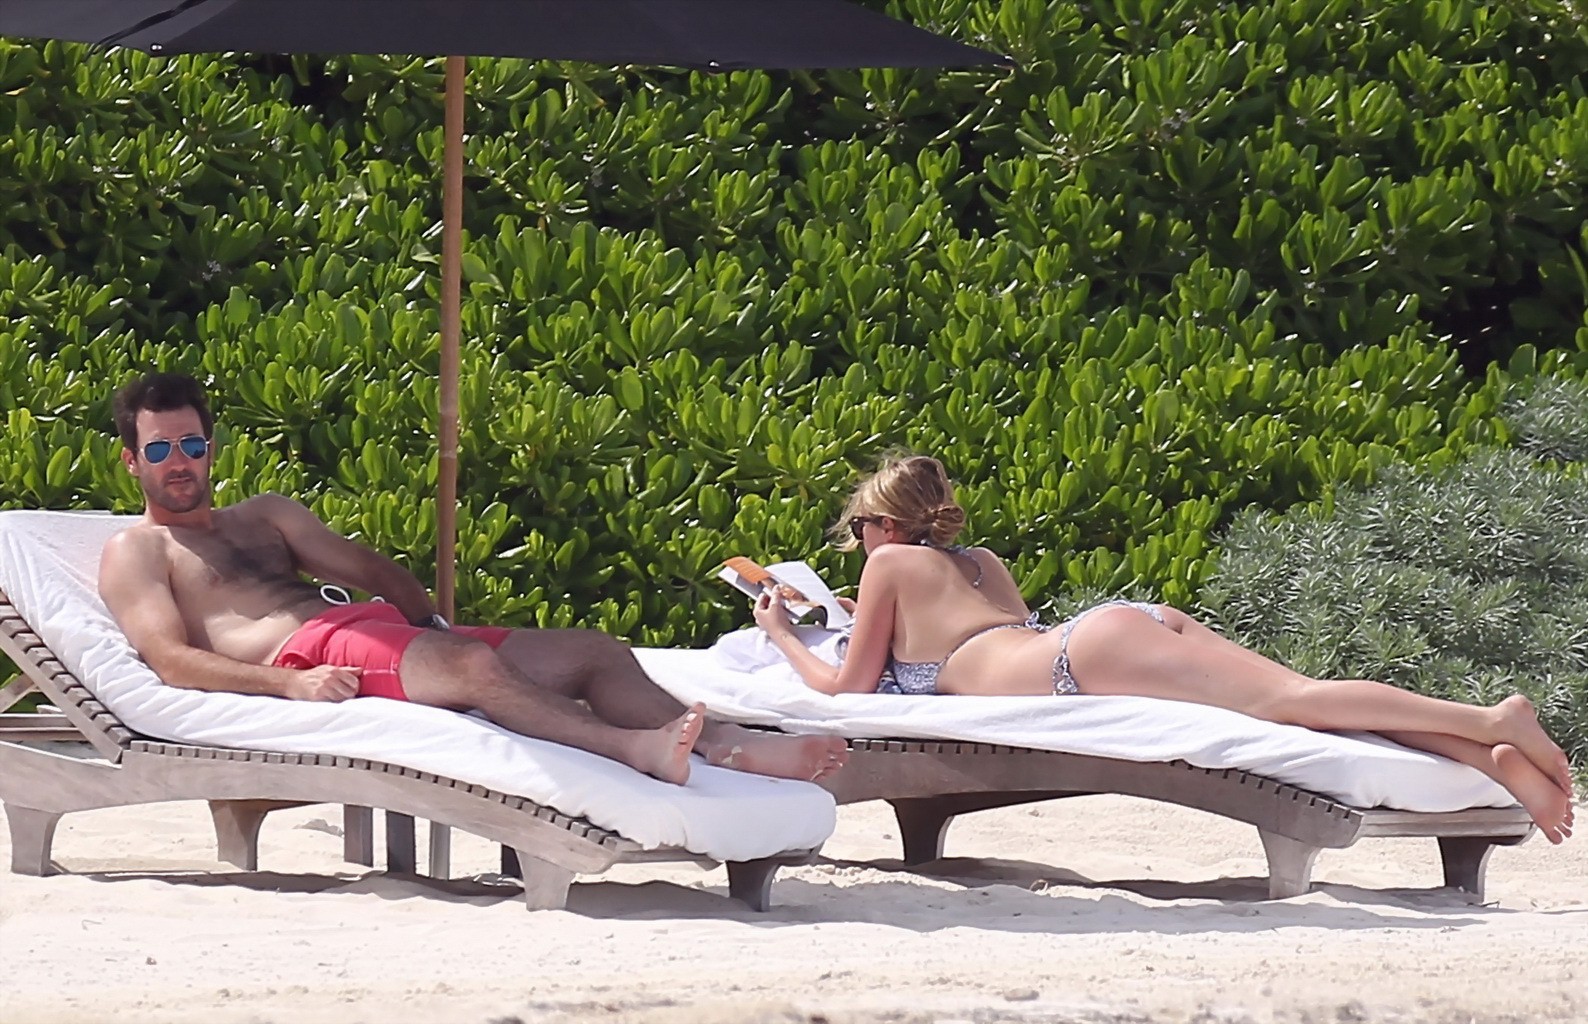 Kate upton bräunt ihre milchigen Melonen und Arsch im silbernen Bikini am Strand in mex
 #75190965